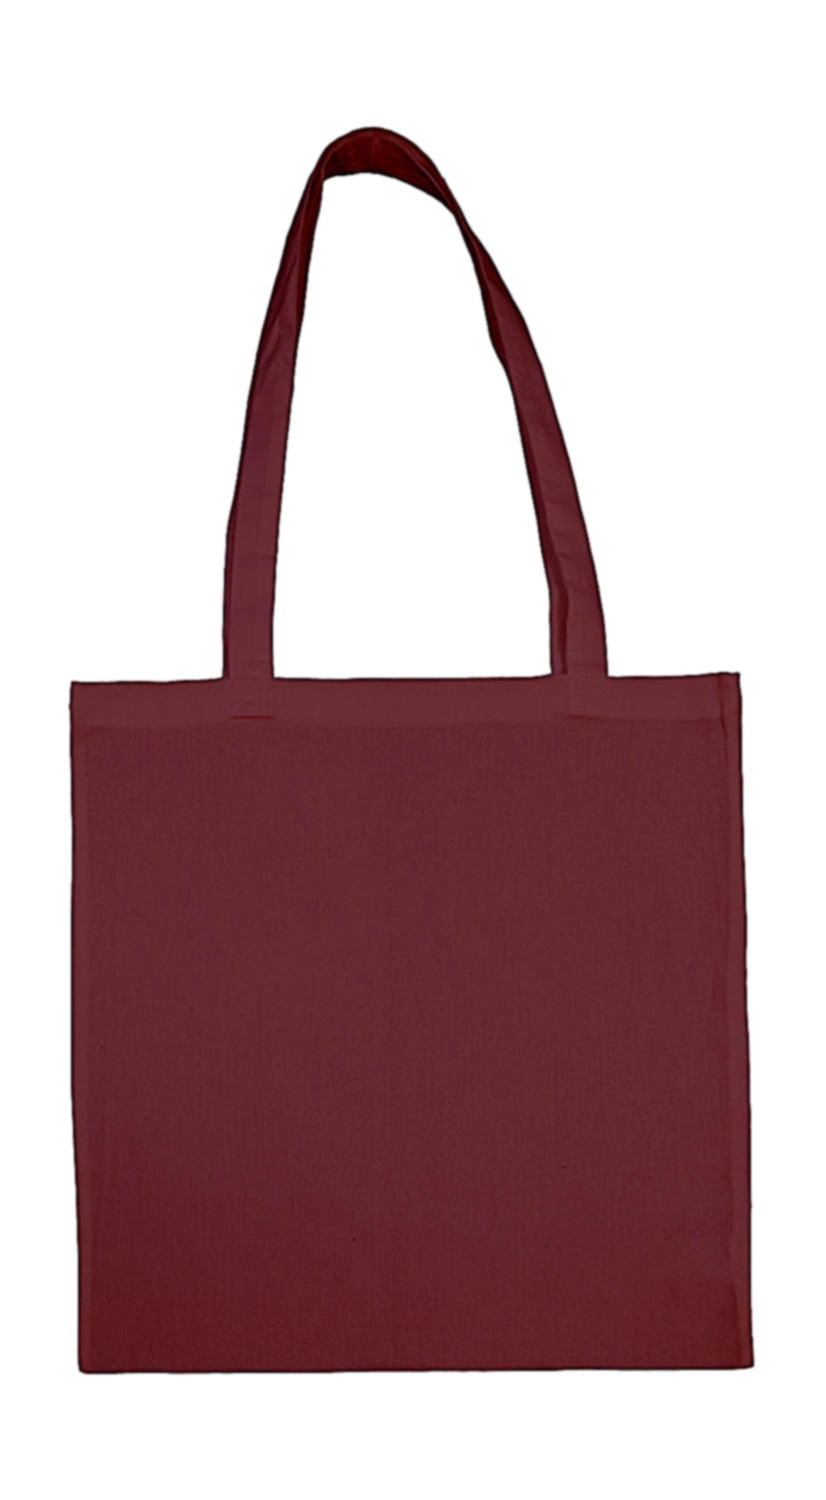 Cotton Bag LH zum Besticken und Bedrucken in der Farbe Burgundy mit Ihren Logo, Schriftzug oder Motiv.